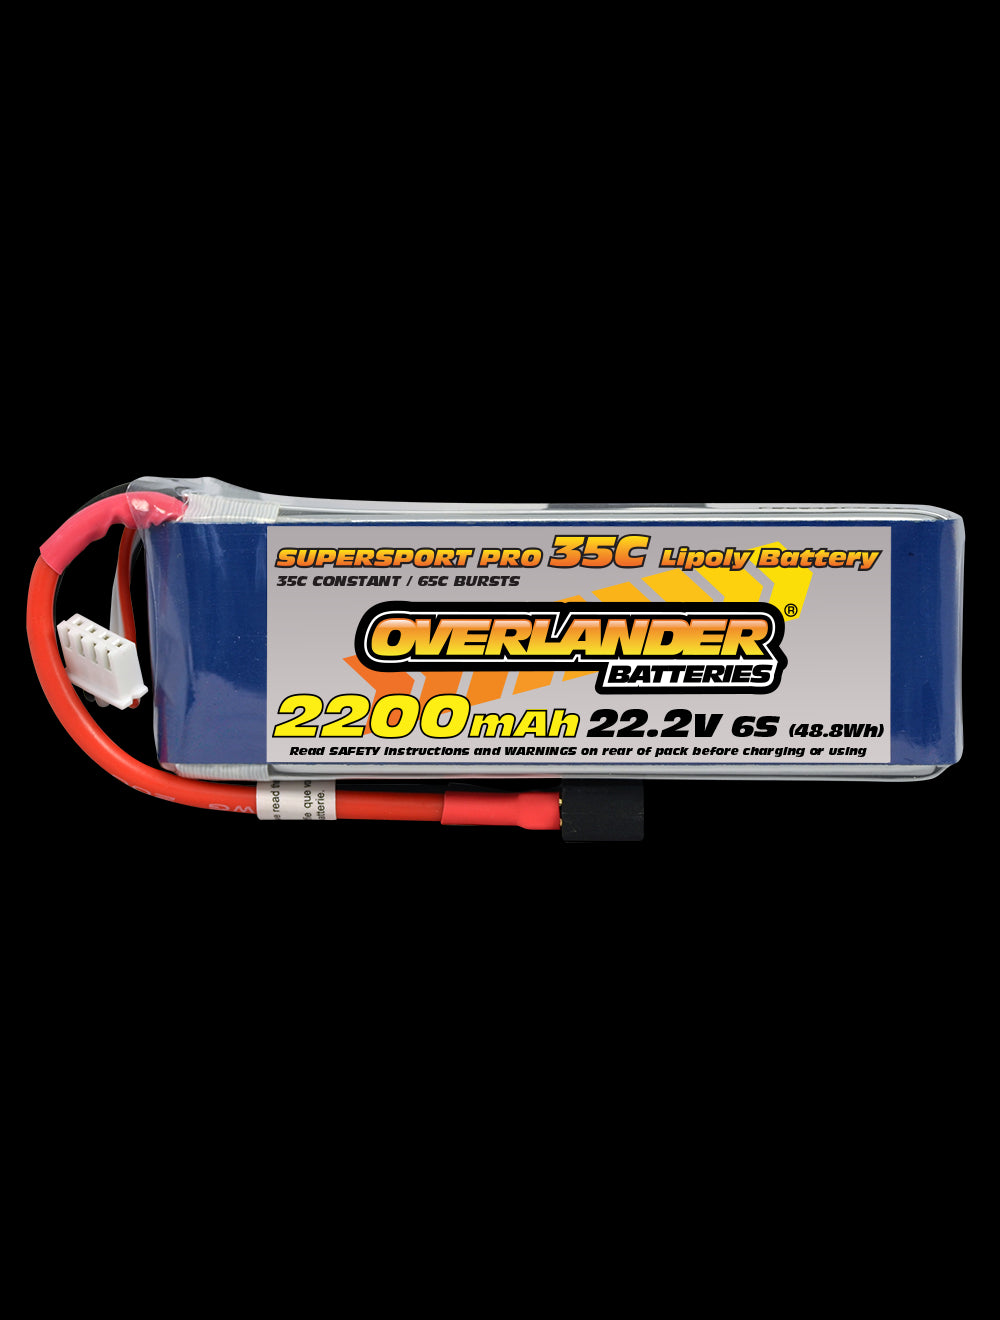 Overlander 2200mAh 22.2V 6S 35C Supersport Pro LiPo Battery - Deans Connector 2895